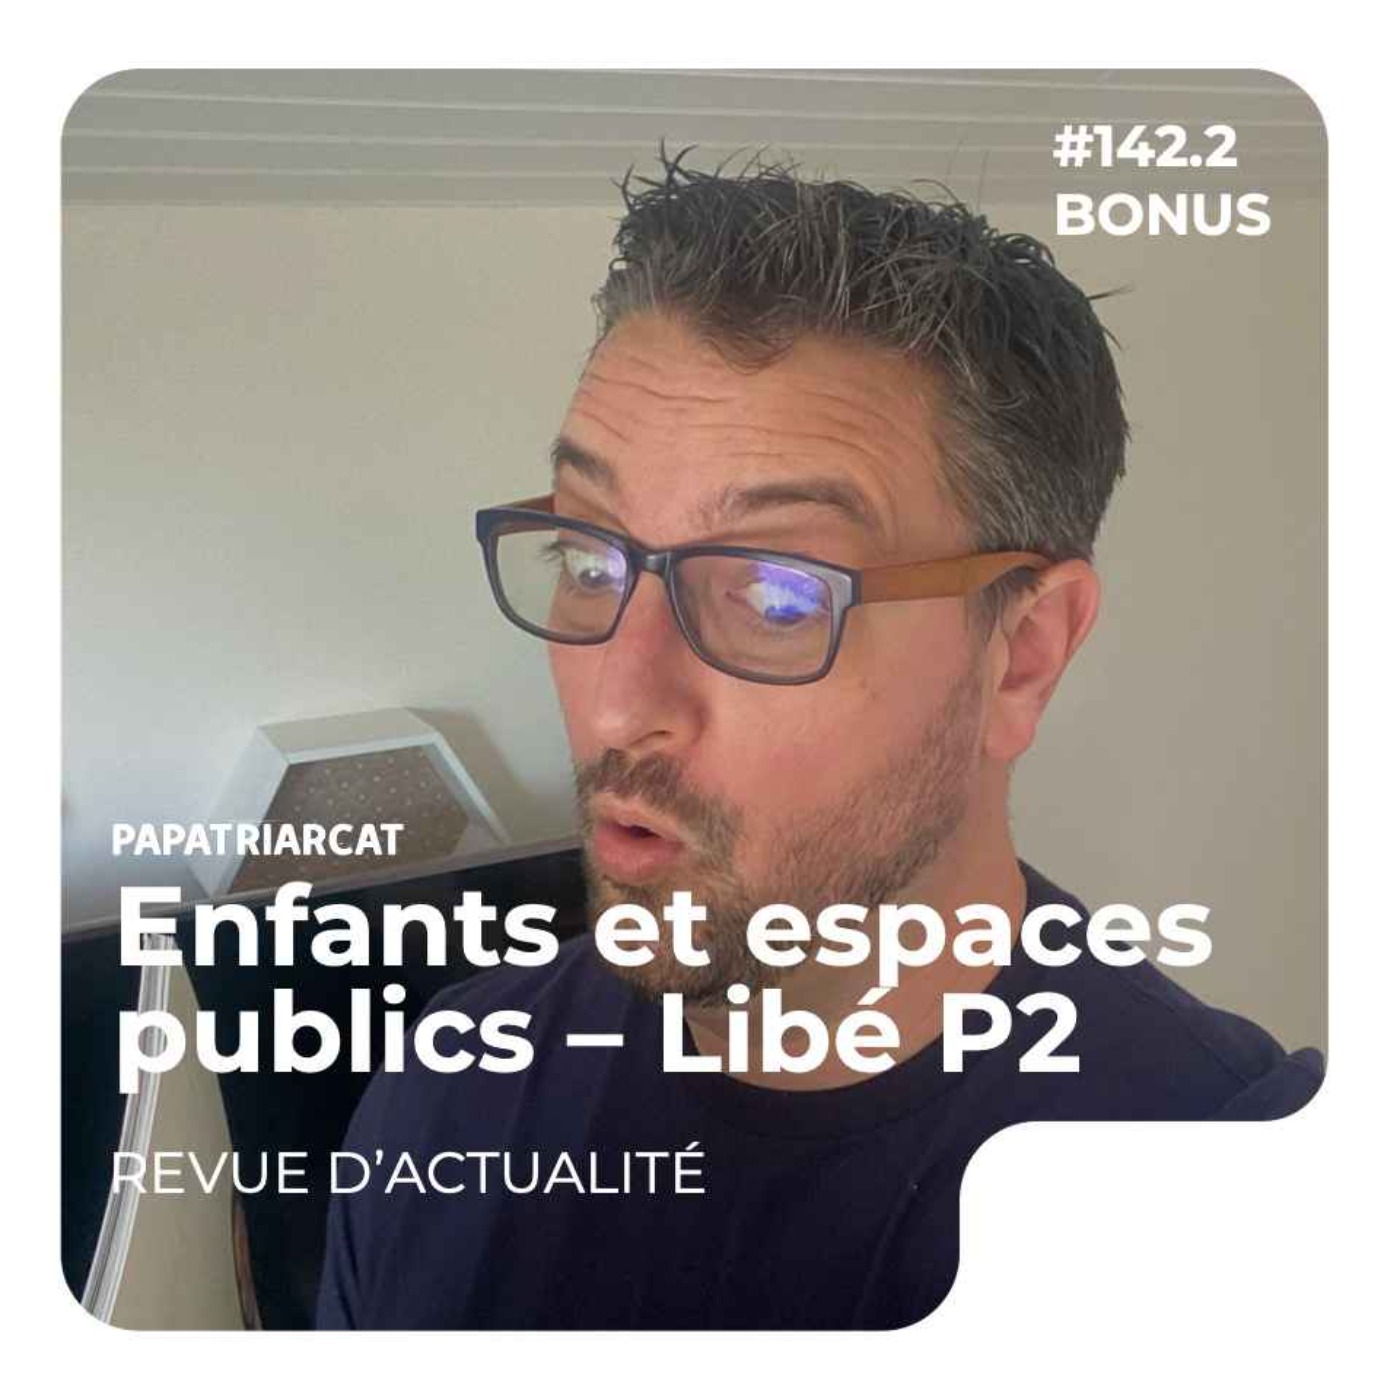 DÉCOUVERTE BONUS - Enfants et espaces publics chez Libération, Partie 2 - Revue d'actualité